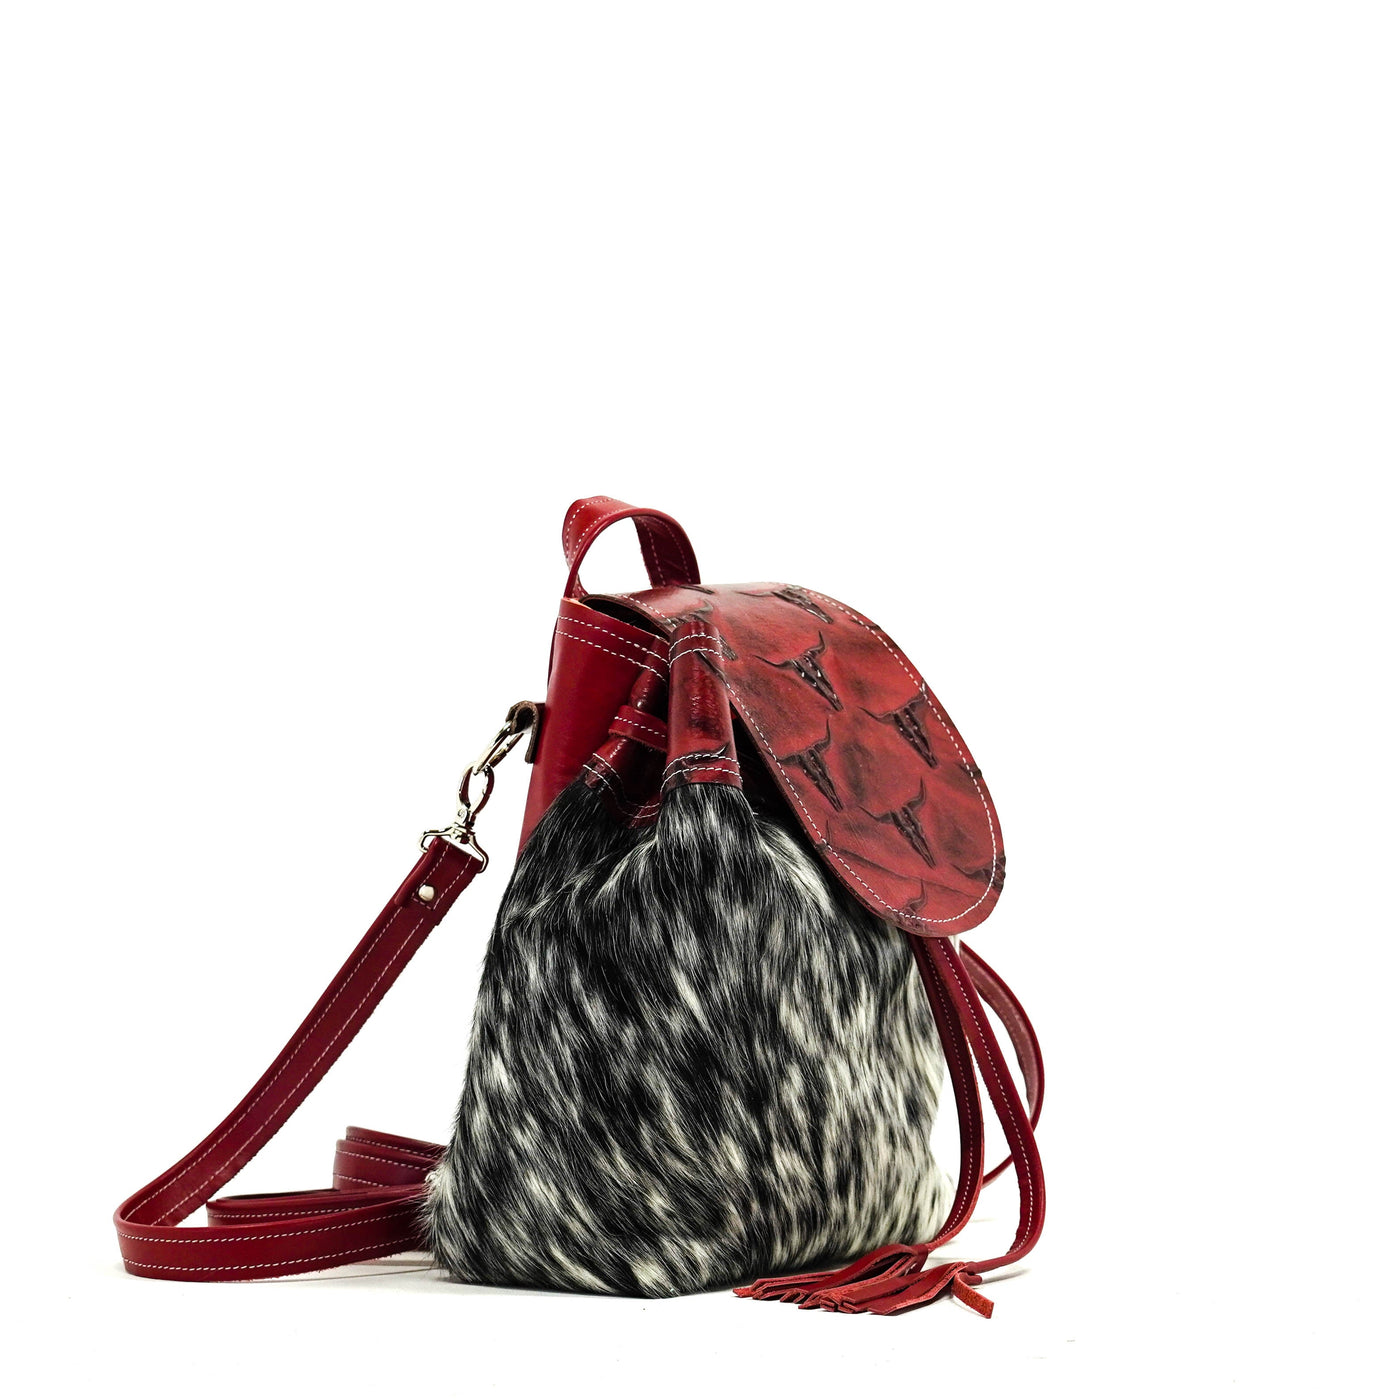 Mini Kelsea Backpack - Salt & Pepper w/ Burgundy Skulls-Mini Kelsea Backpack-Western-Cowhide-Bags-Handmade-Products-Gifts-Dancing Cactus Designs